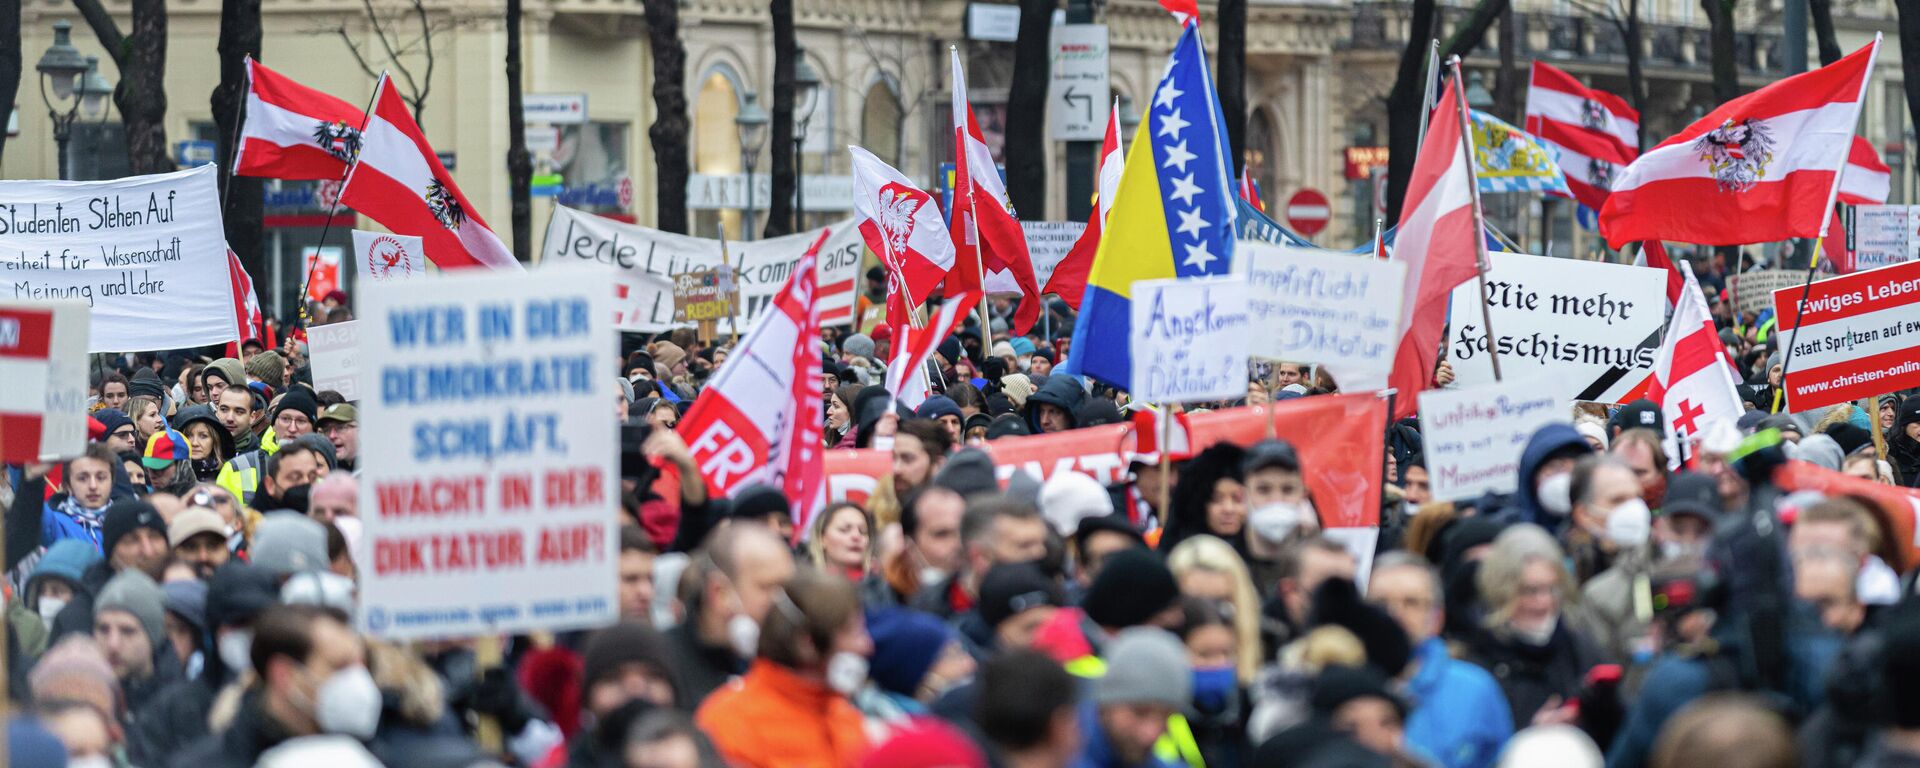 Protest protiv obavezne vakcinacije i korona mera u Beču - Sputnik Srbija, 1920, 11.12.2021